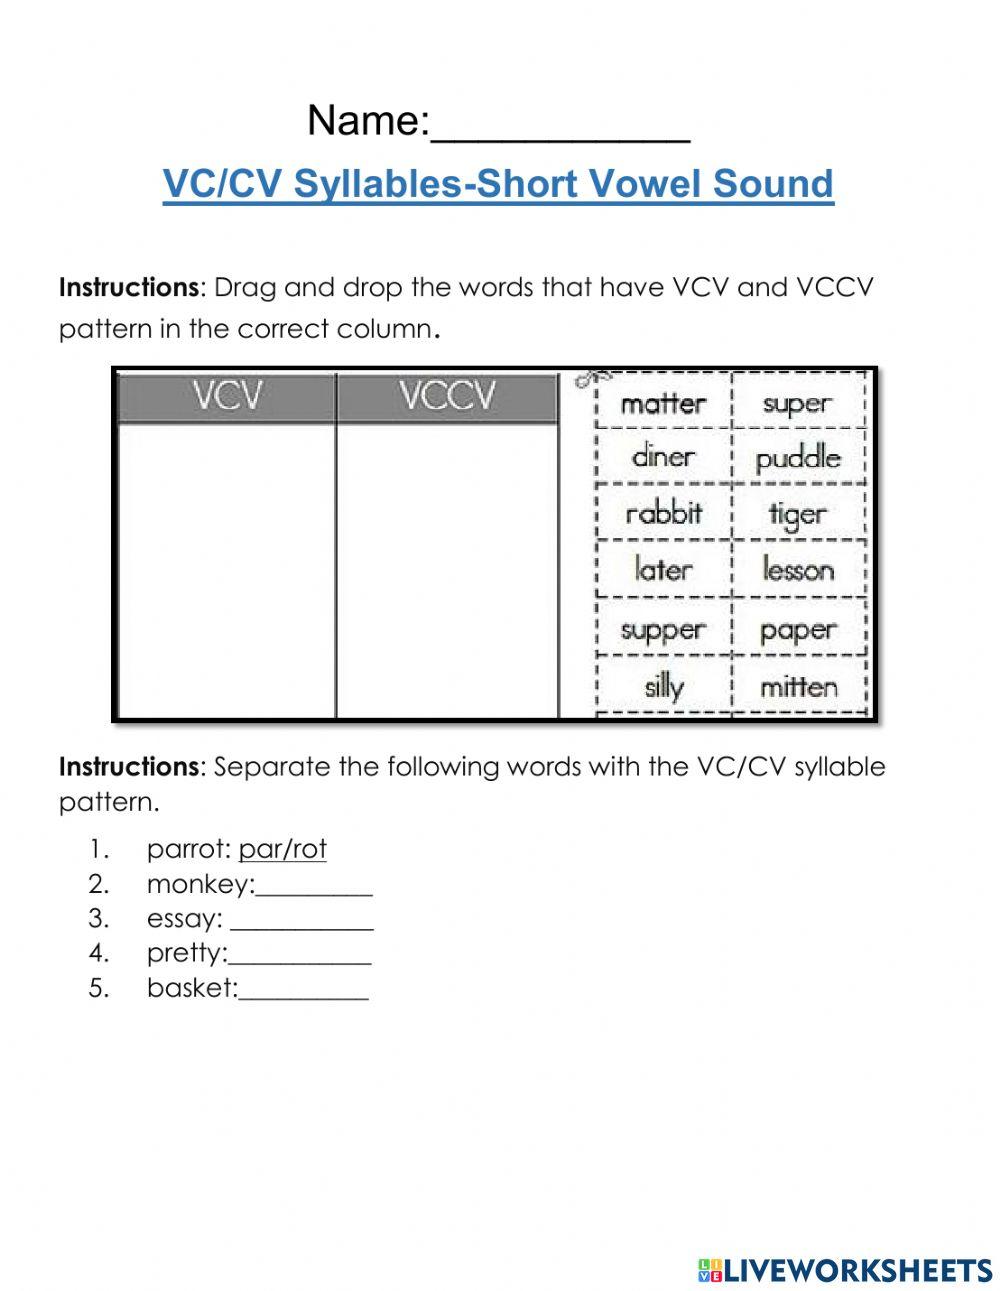 VCCV Syllables